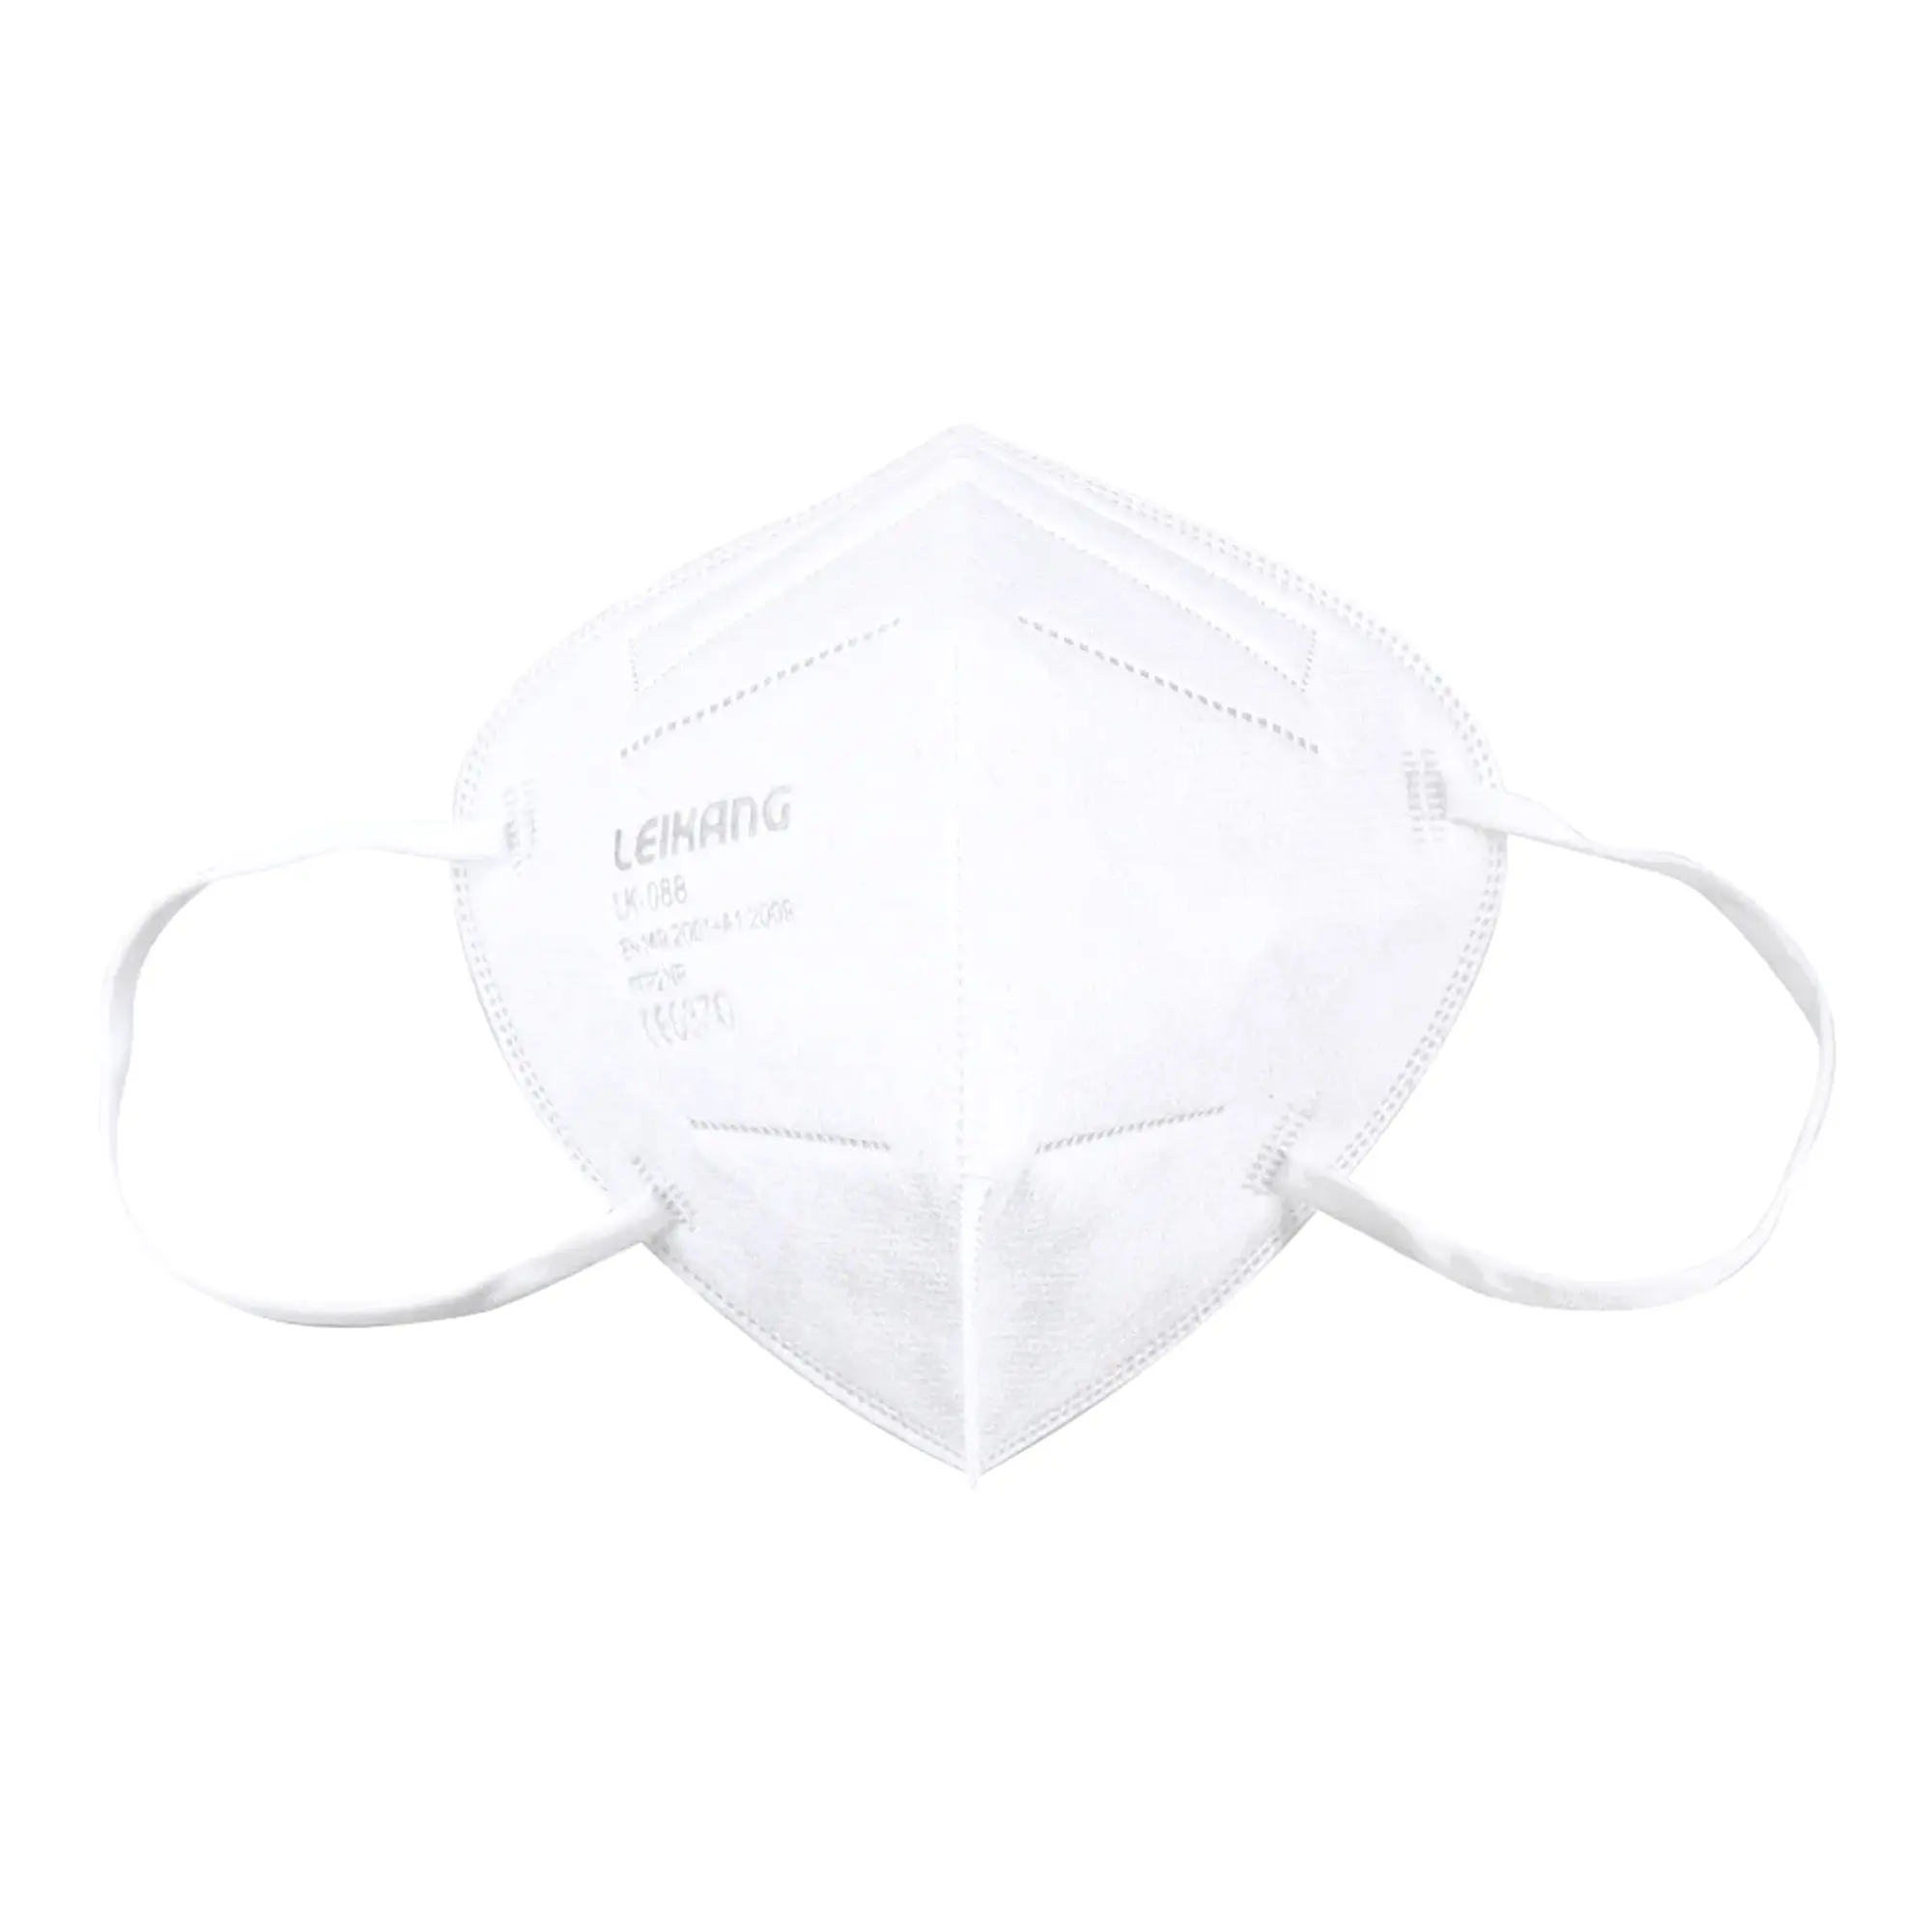 Leikang FFP2 Atemschutzmaske ohne Ventil, CE-Nummer: CE-0370